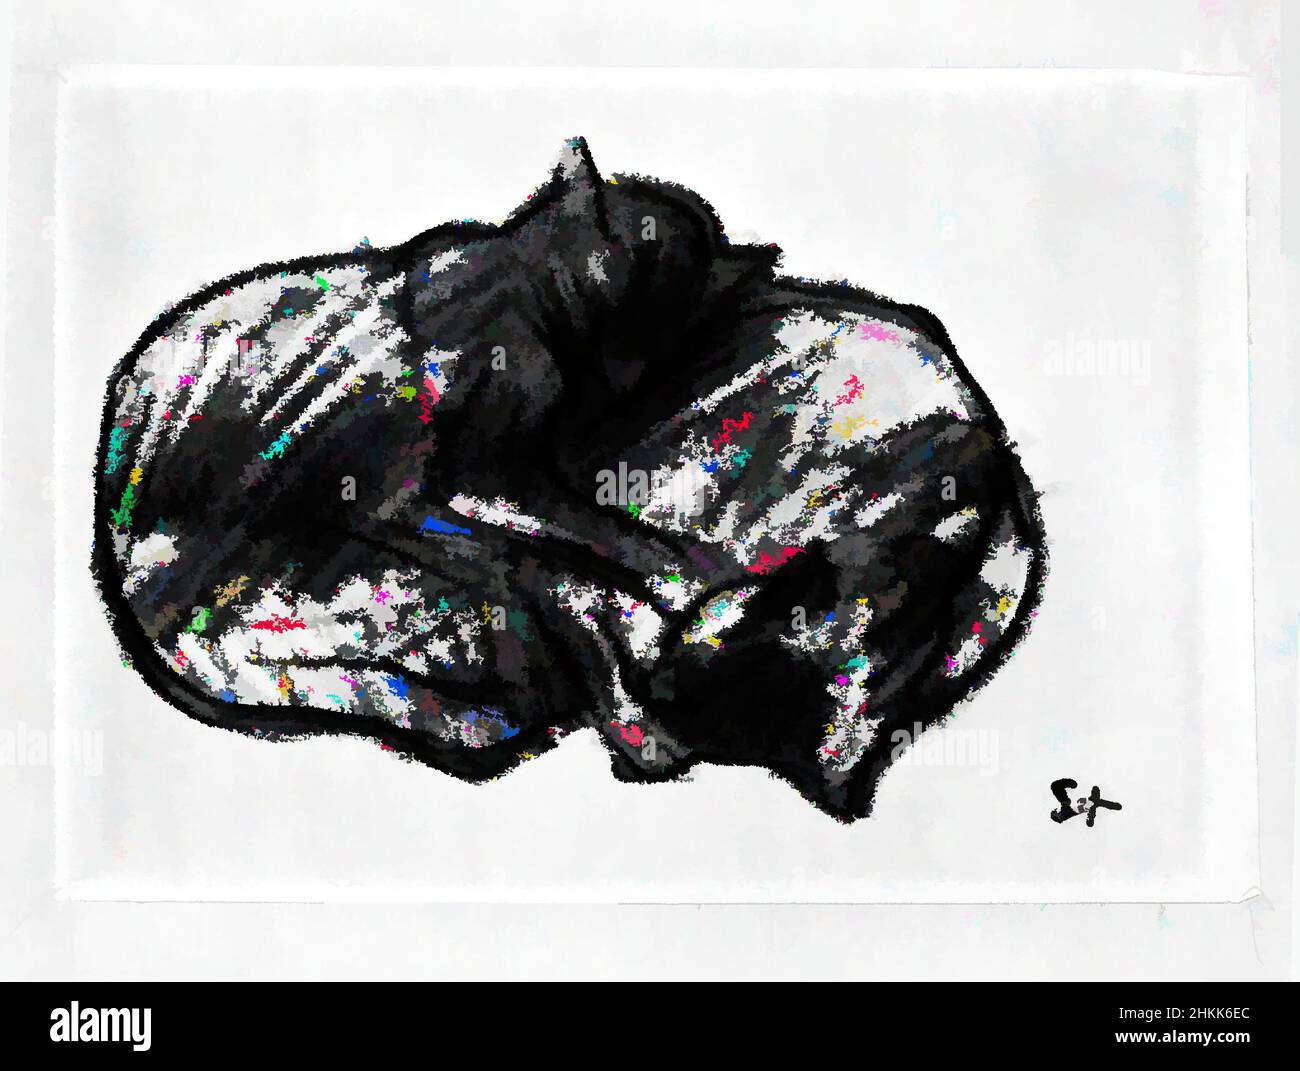 Kunst inspiriert von zwei schlafenden Katzen, Théophile Alexandre Steinlen, französisch, 1859-1923, Zeichnung, buntstift auf Wobelpapier, Blatt: 5 1/2 x 7 7/8 Zoll, 14 x 20 cm, Tiere, schwarze Katze, Katze, kuscheln, Feline, Kätzchen, les Chats, Classic Works modernisiert von Artotop mit einem Schuss Moderne. Formen, Farbe und Wert, auffällige visuelle Wirkung auf Kunst. Emotionen durch Freiheit von Kunstwerken auf zeitgemäße Weise. Eine zeitlose Botschaft, die eine wild kreative neue Richtung verfolgt. Künstler, die sich dem digitalen Medium zuwenden und die Artotop NFT erschaffen Stockfoto